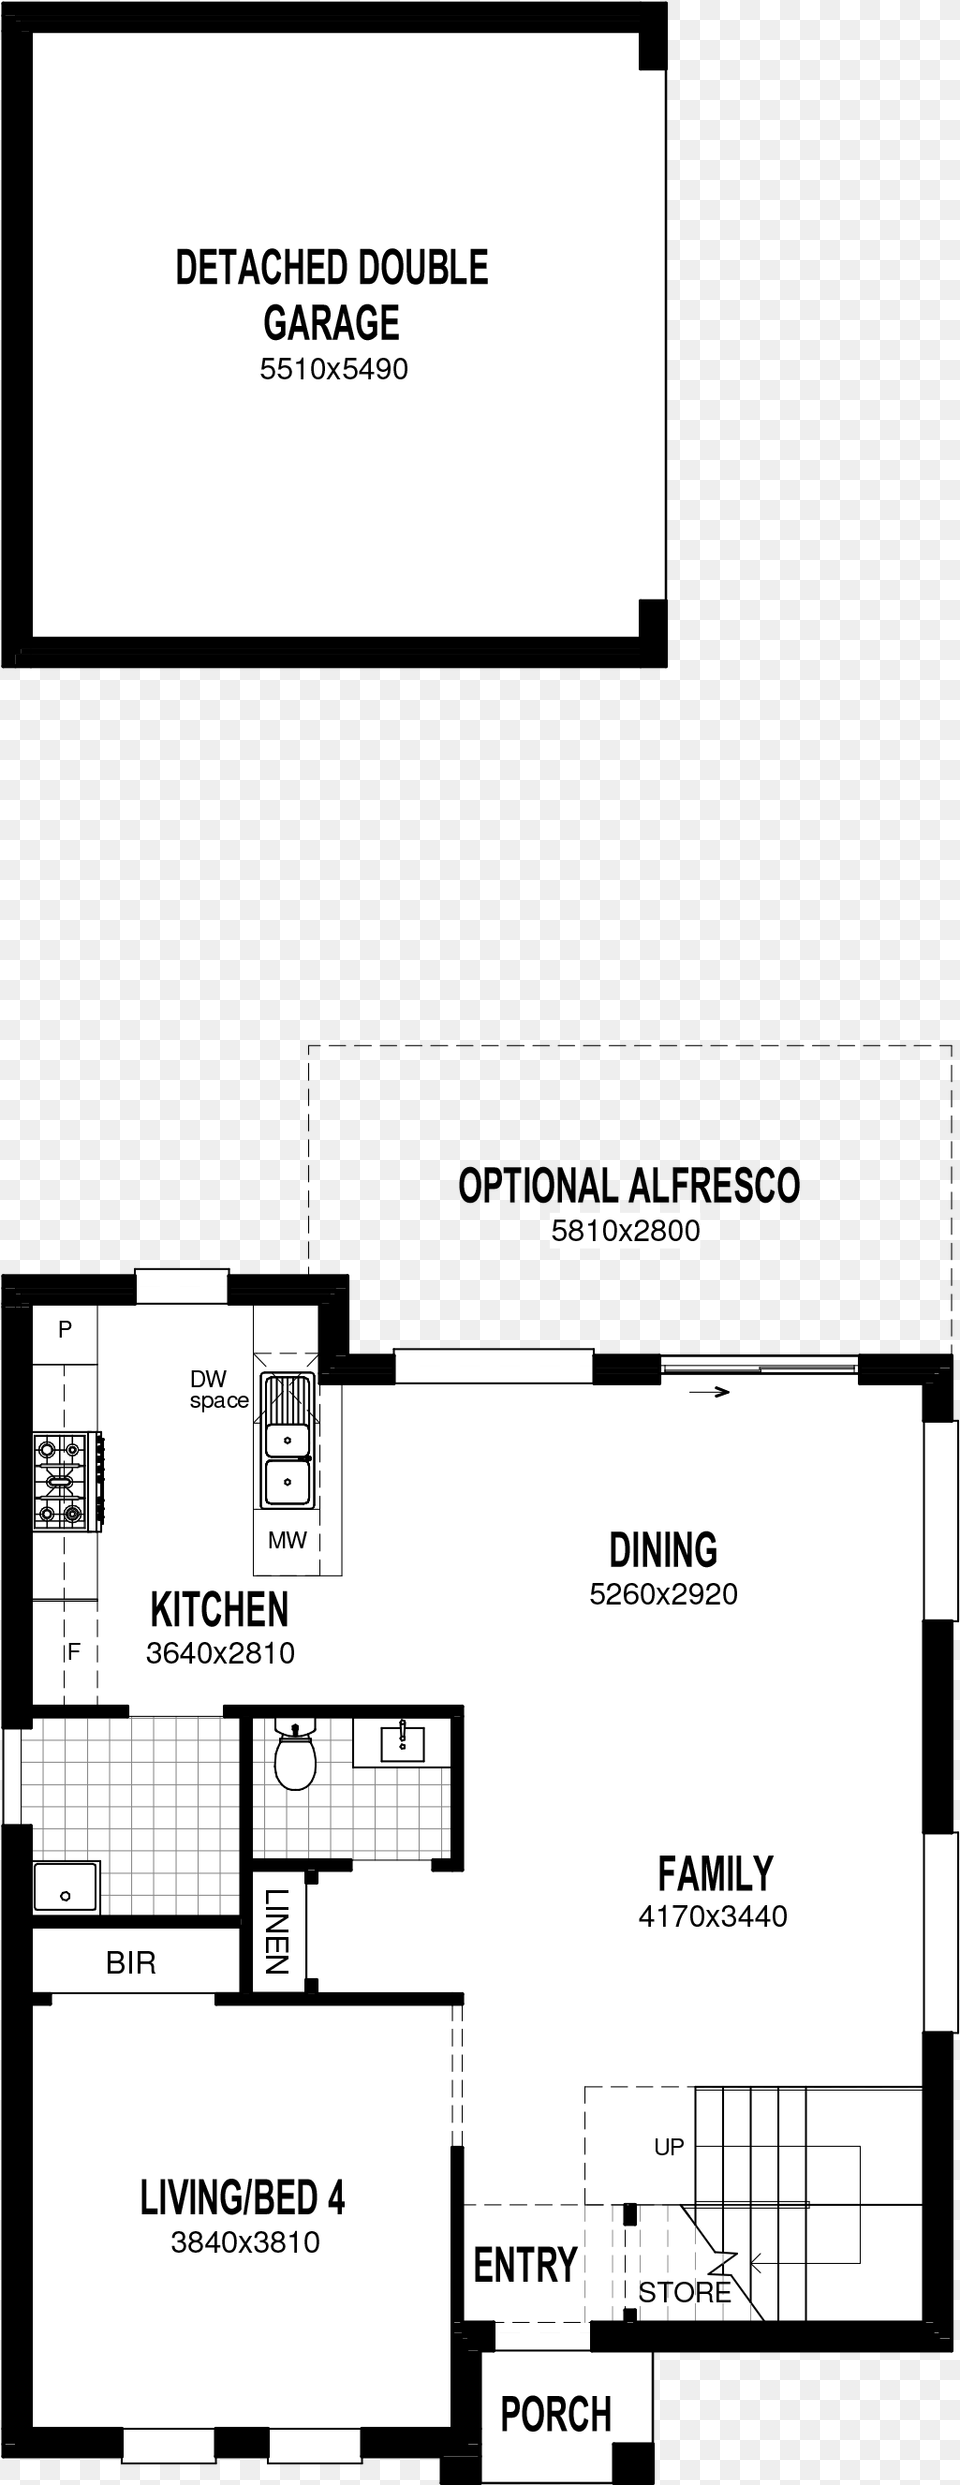 Floor Plan, Diagram, Floor Plan Free Png Download